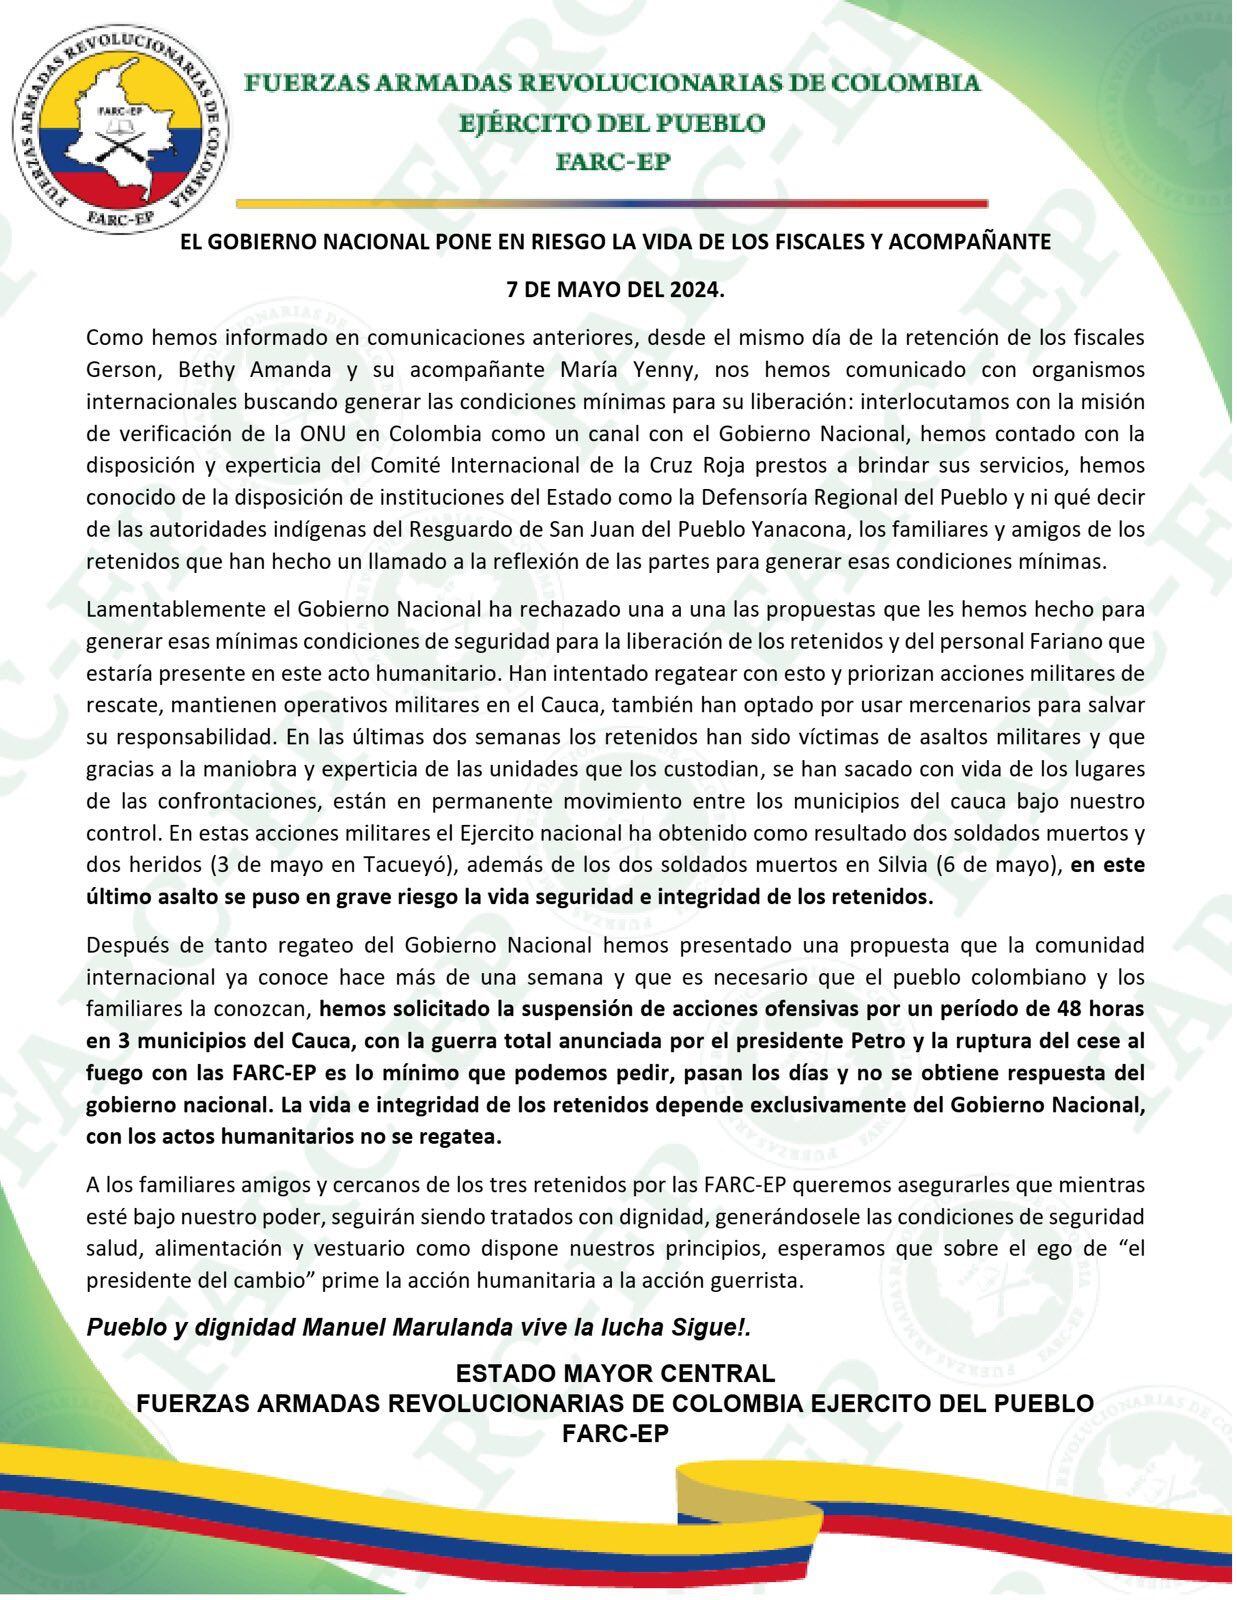 Disidencias de las Farc pidieron una suspensión de acciones ofensivas durante 48 horas en tres municipios del Cauca - crédito @FARCEP_